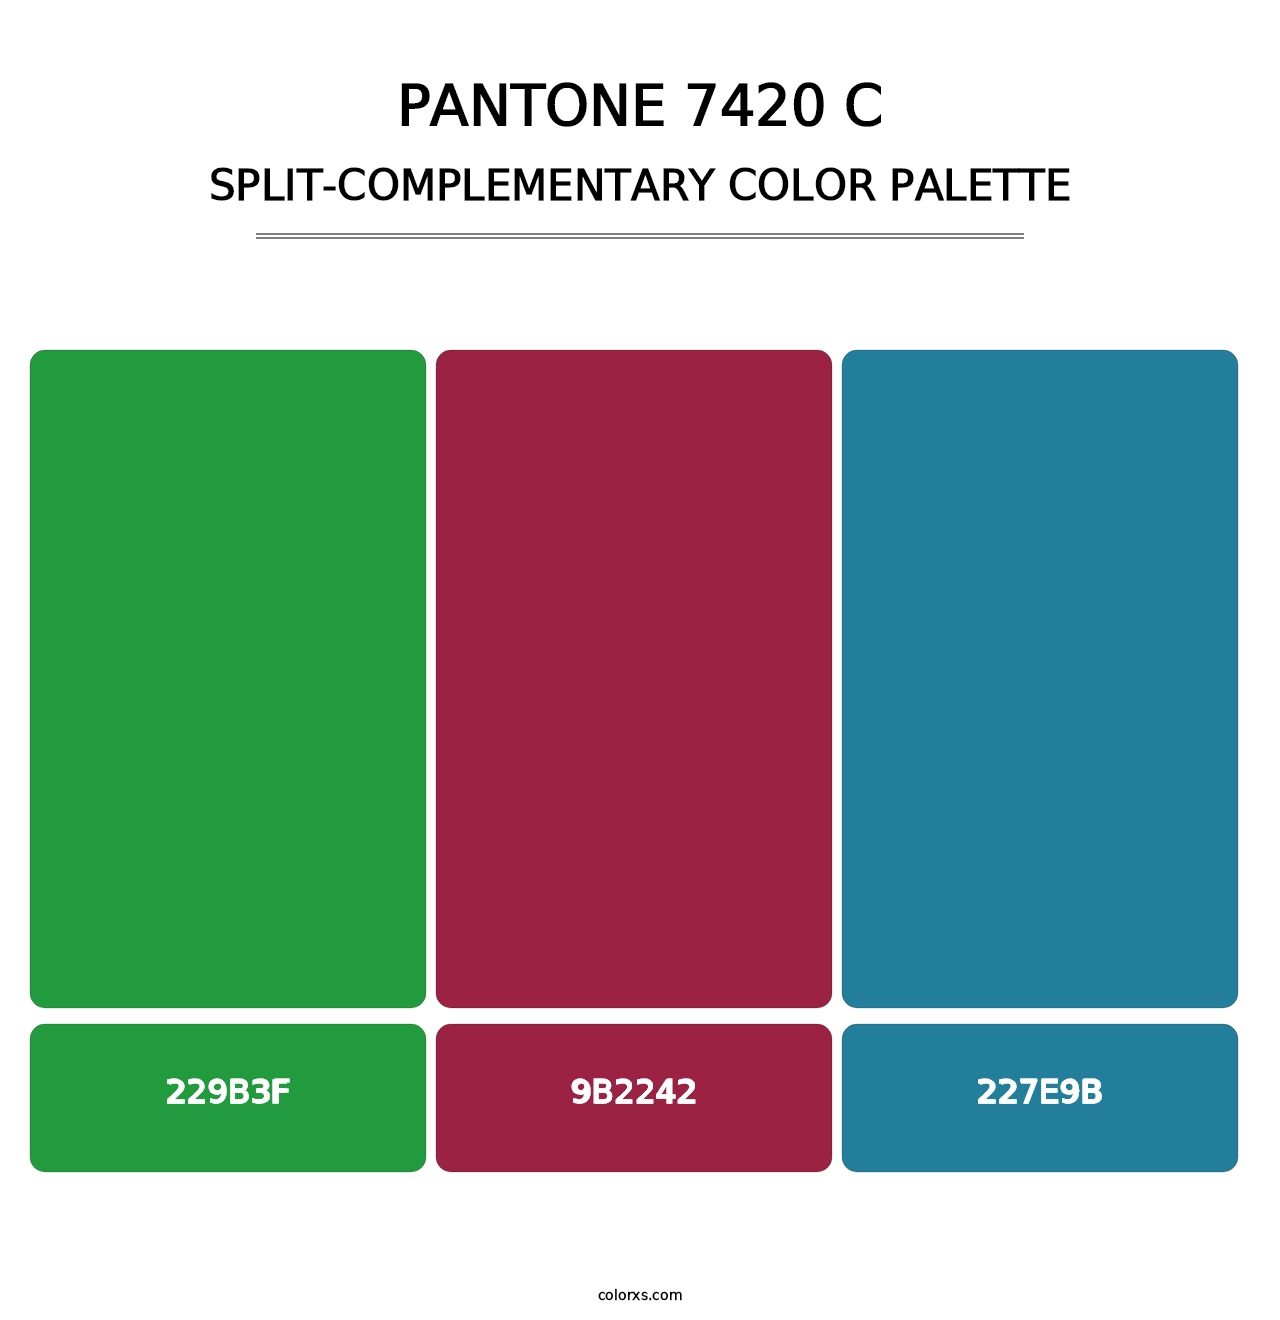 PANTONE 7420 C - Split-Complementary Color Palette